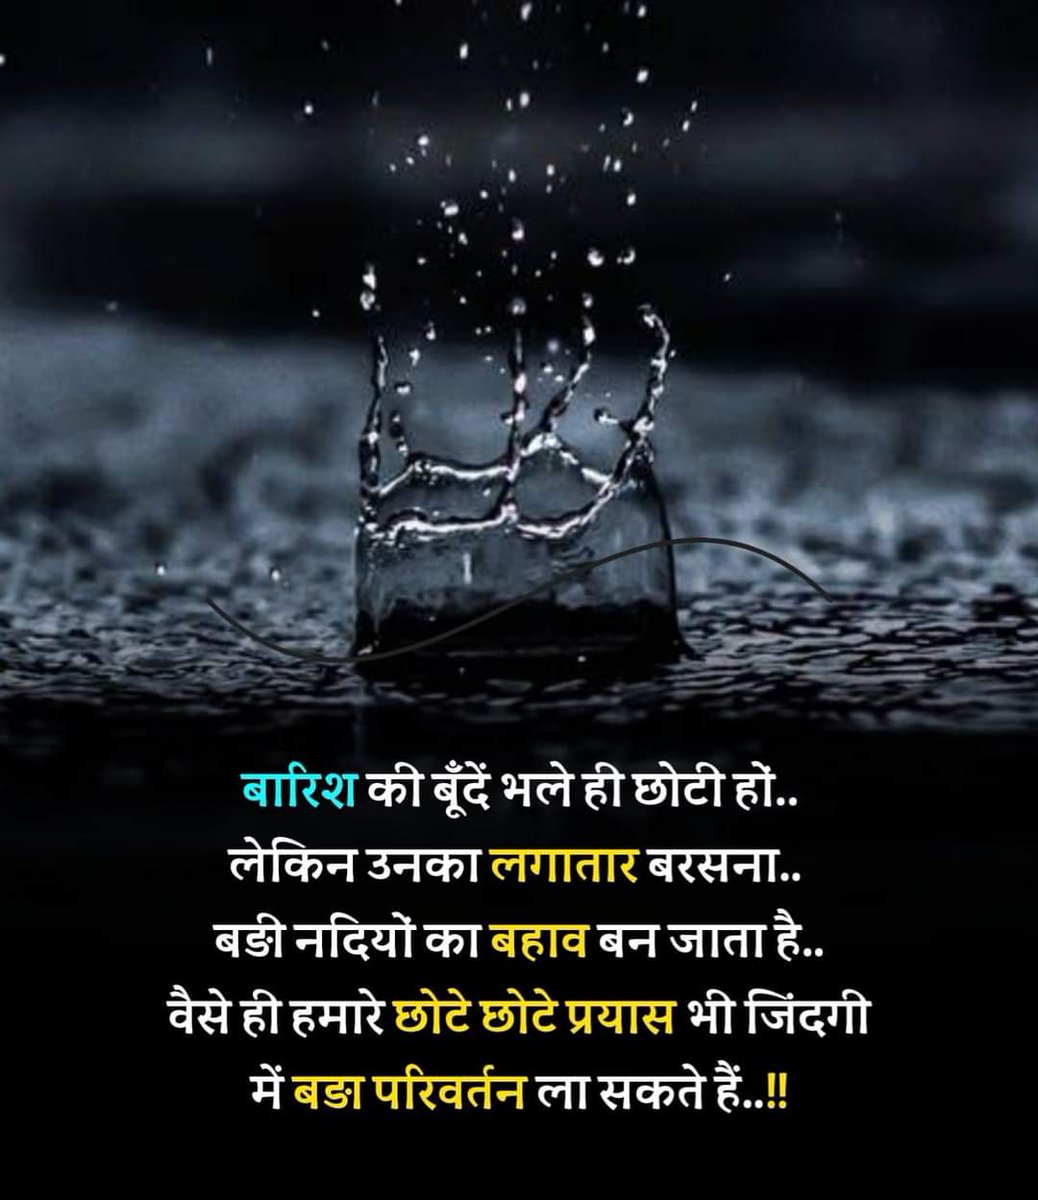 बारिश की बुंदे भले ही छोटी हो ...
लेकिन उनका लगातार बरसना....
बड़ी नदियों का बहाव बन जाता है....
.......  जय श्री राम 🙏🚩
#GoodMorningEveryone 
#Jaishanidev